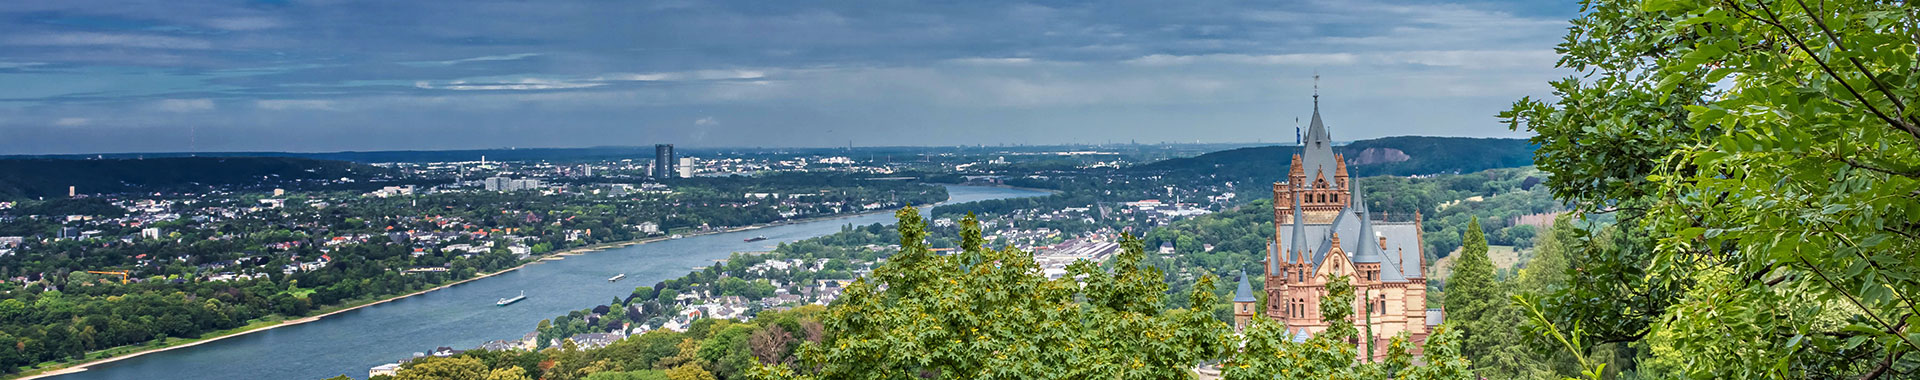 Der Drachenfels am Rhein